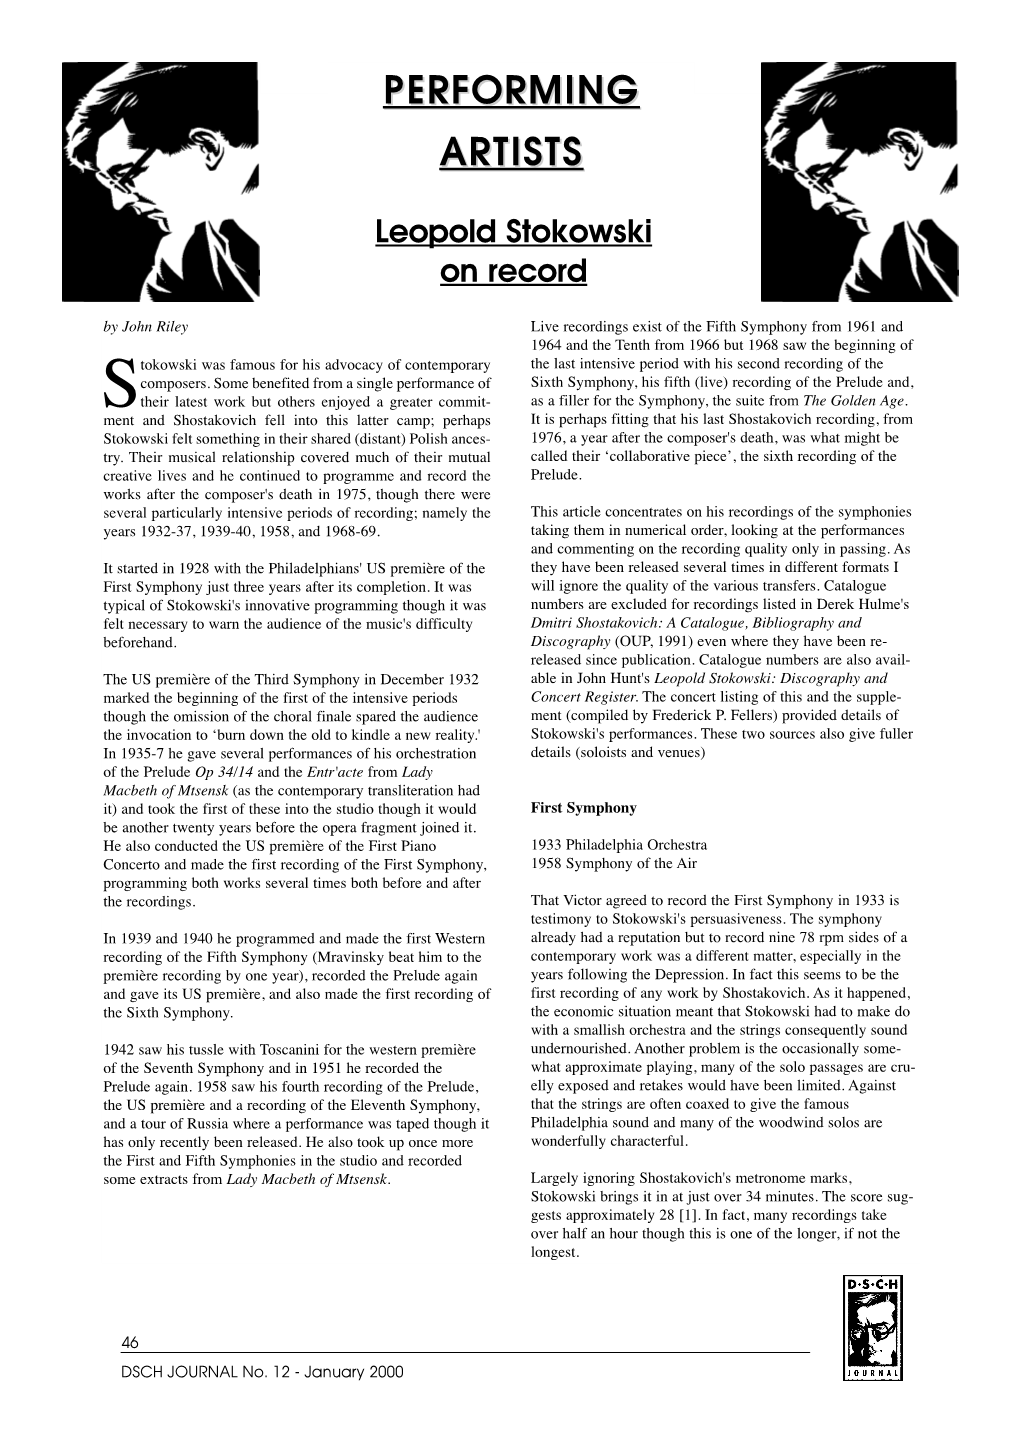 Leopold Stokowski on Record